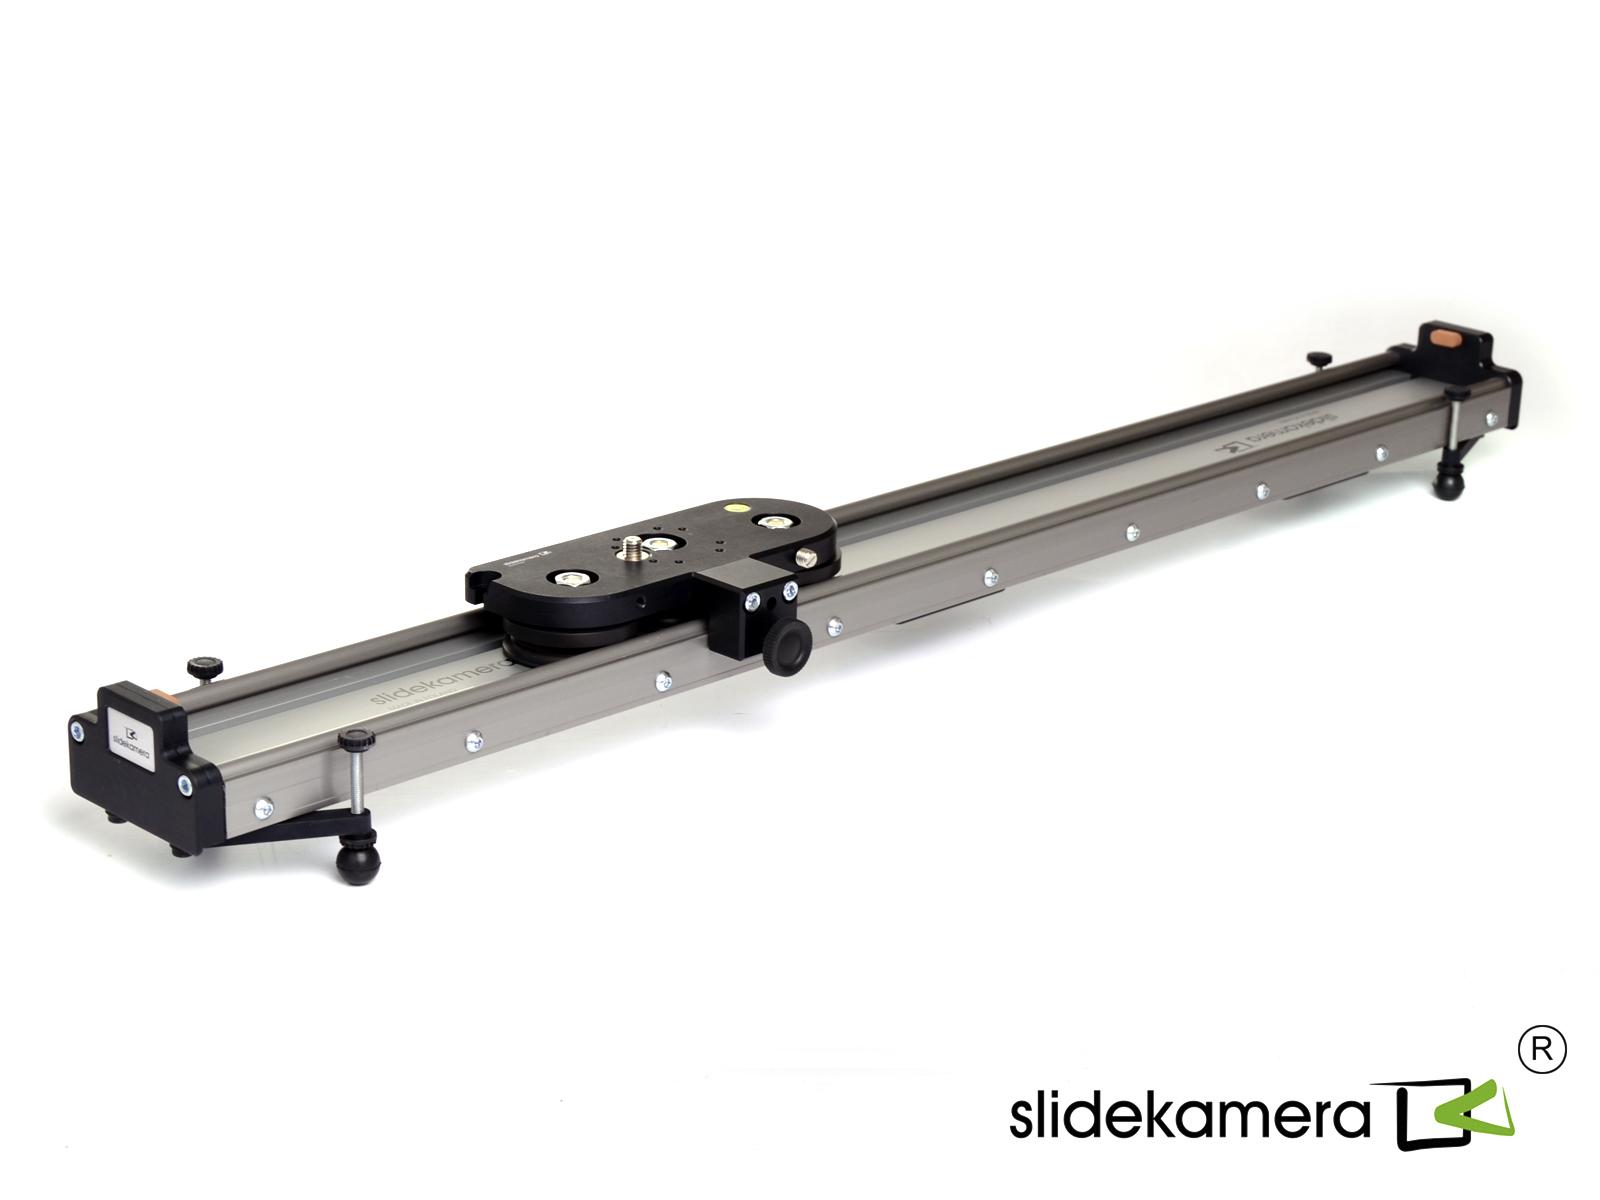  SlideKamera X-SLIDER 2000 BASIC   Ultra-mart